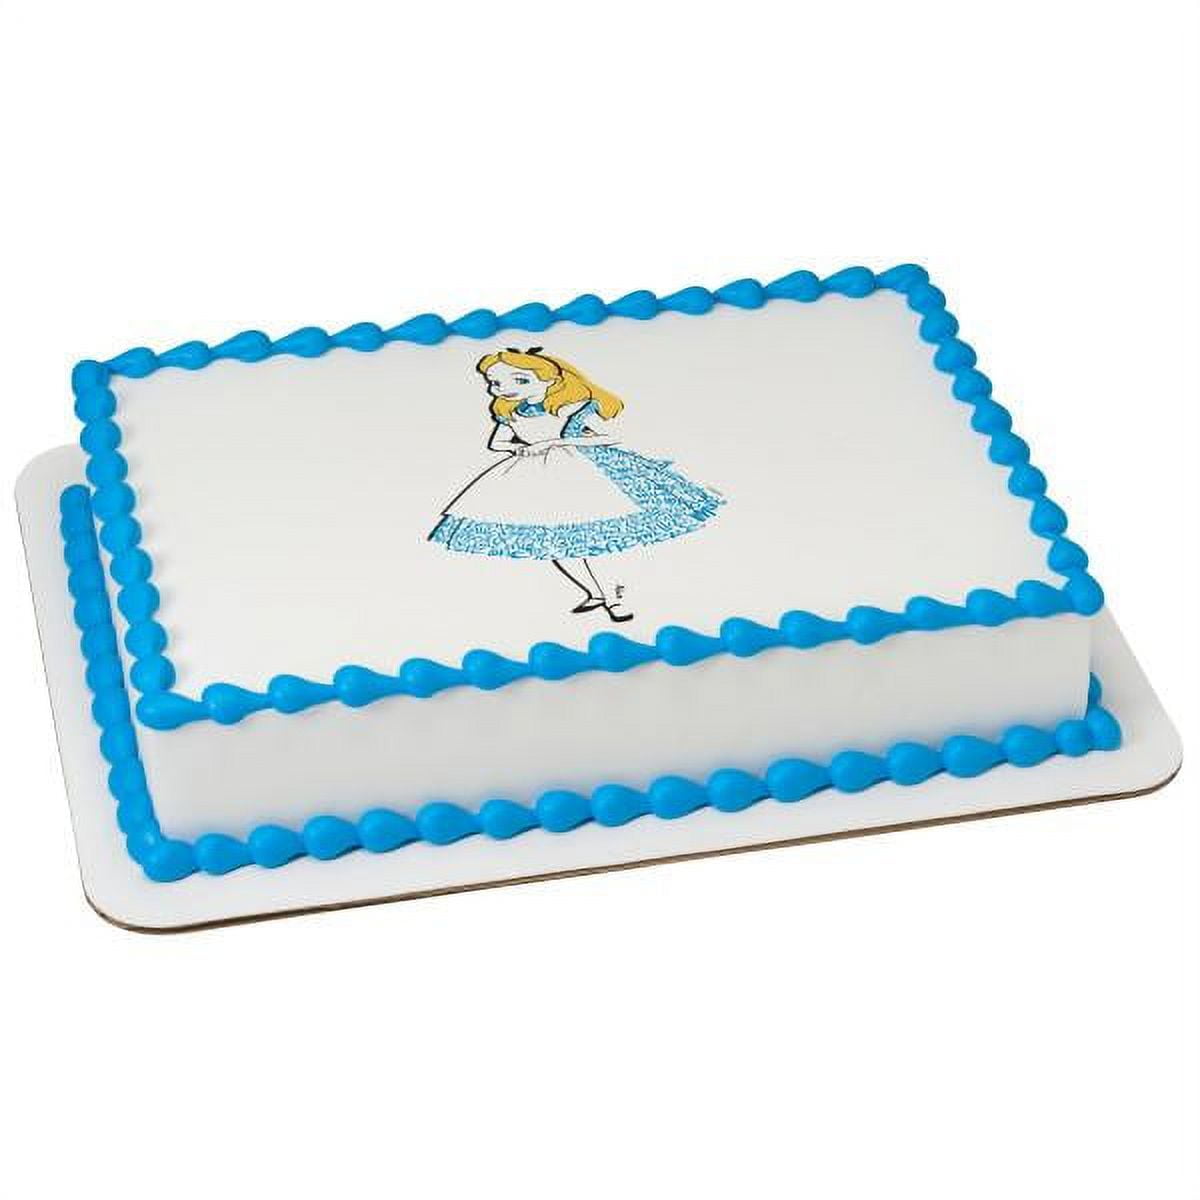 Jual Alice in wonderland cake topper